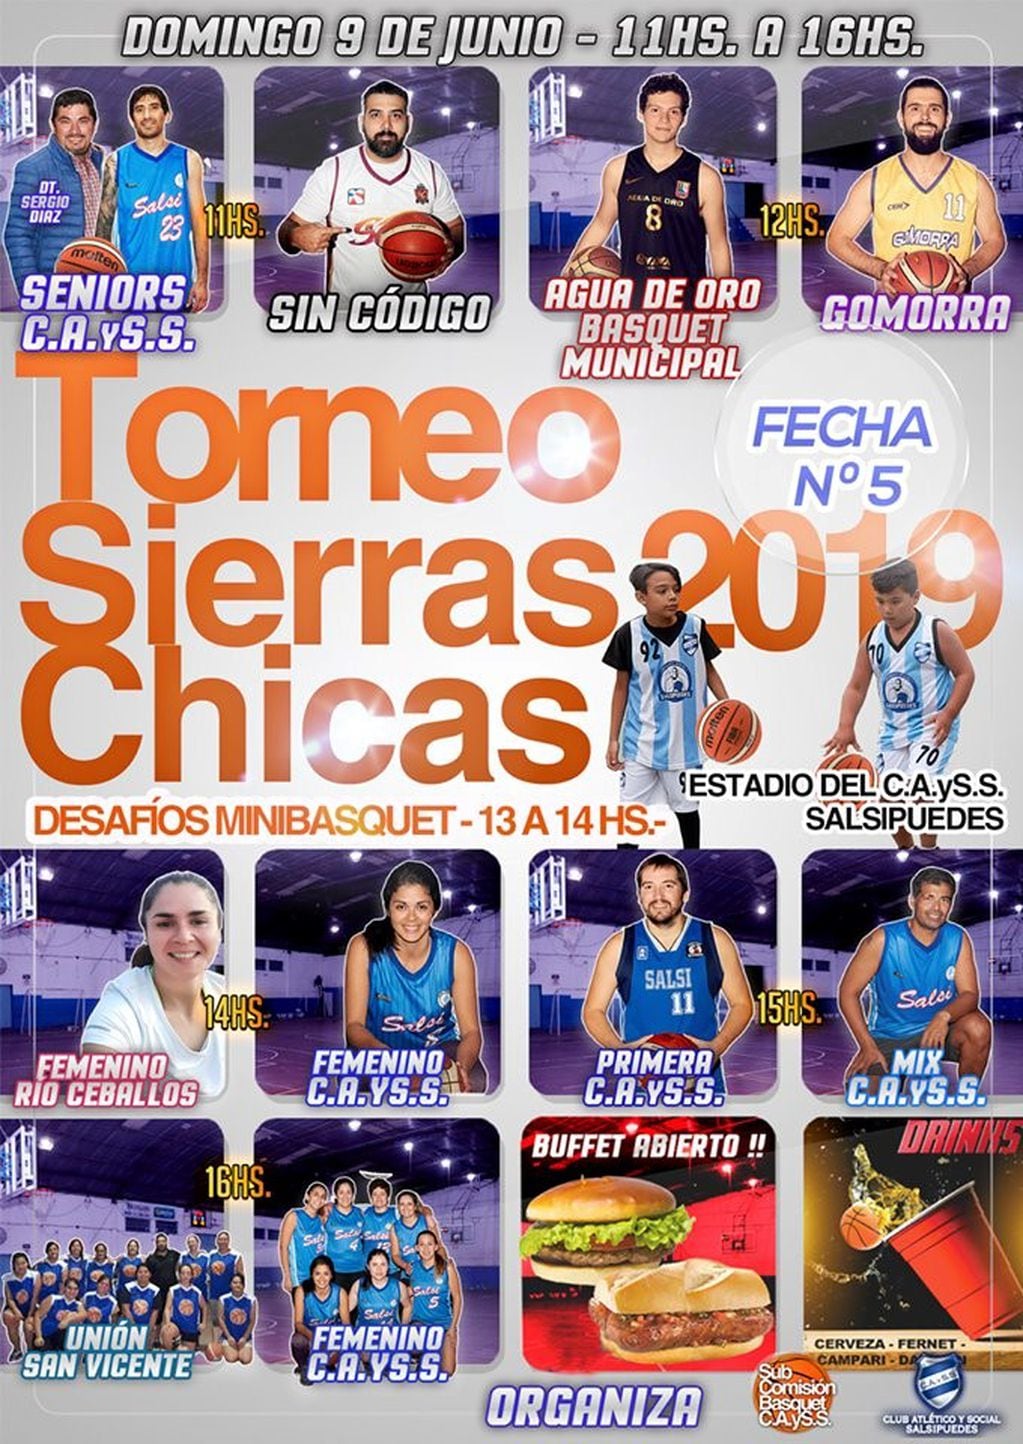 Torneo Sierras Chicas 2019.